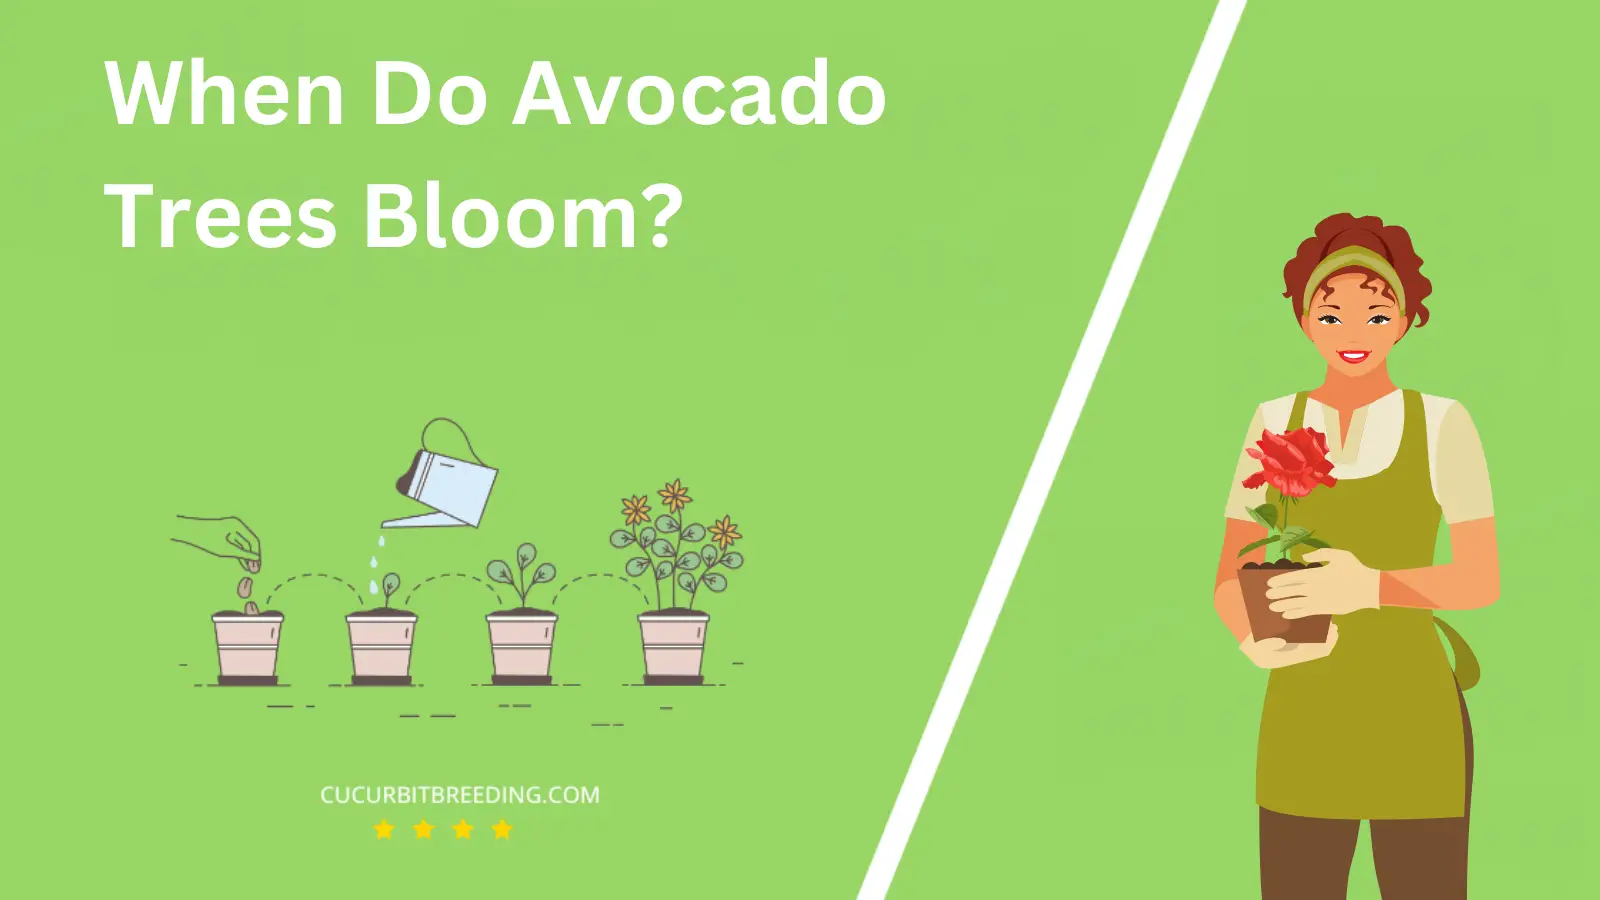 When Do Avocado Trees Bloom?